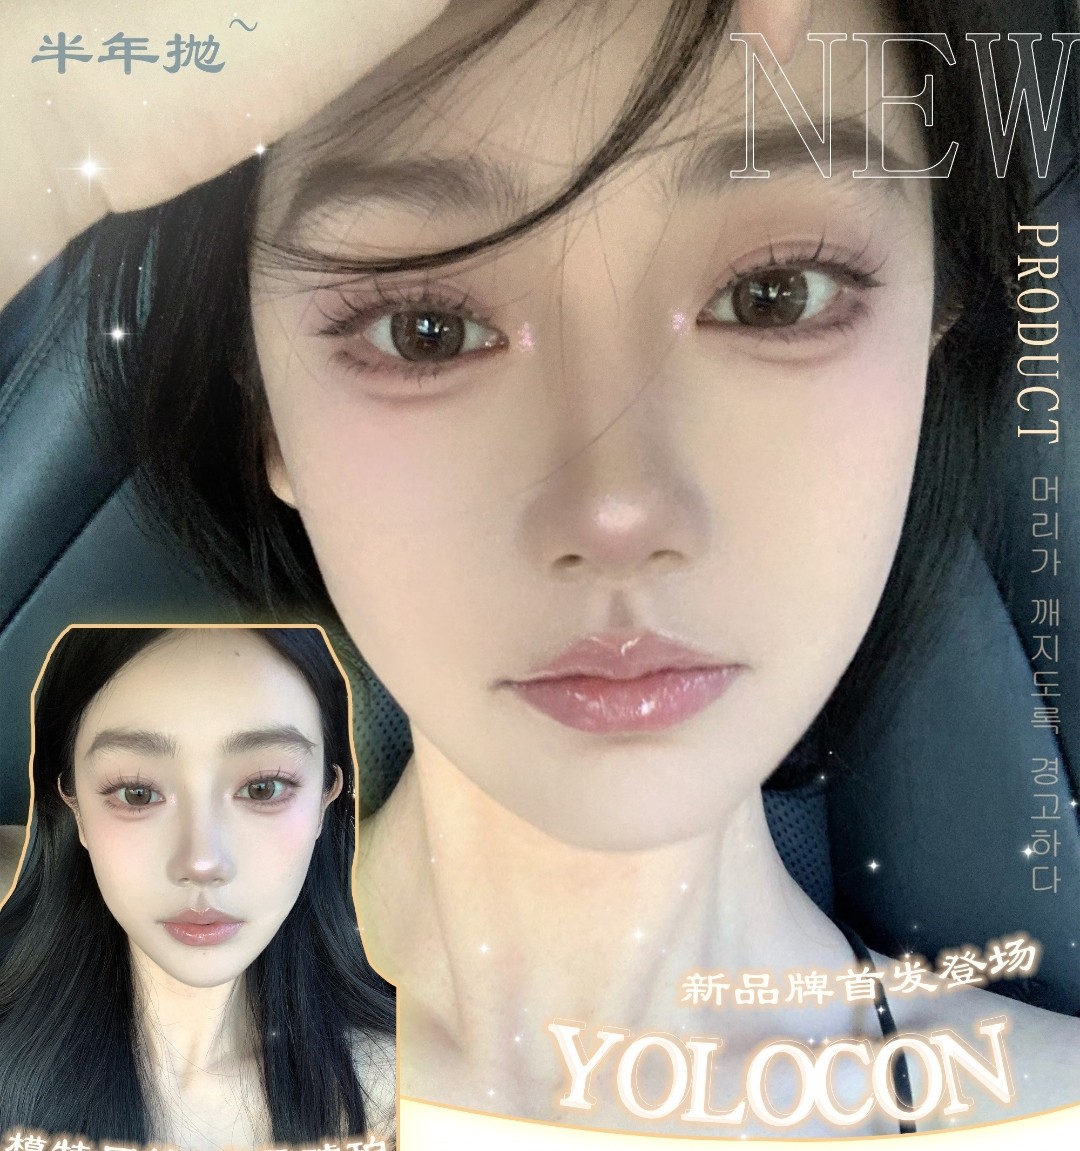 【新品牌】Yolocon 铛铛‼️筹备已久新品牌首发登场